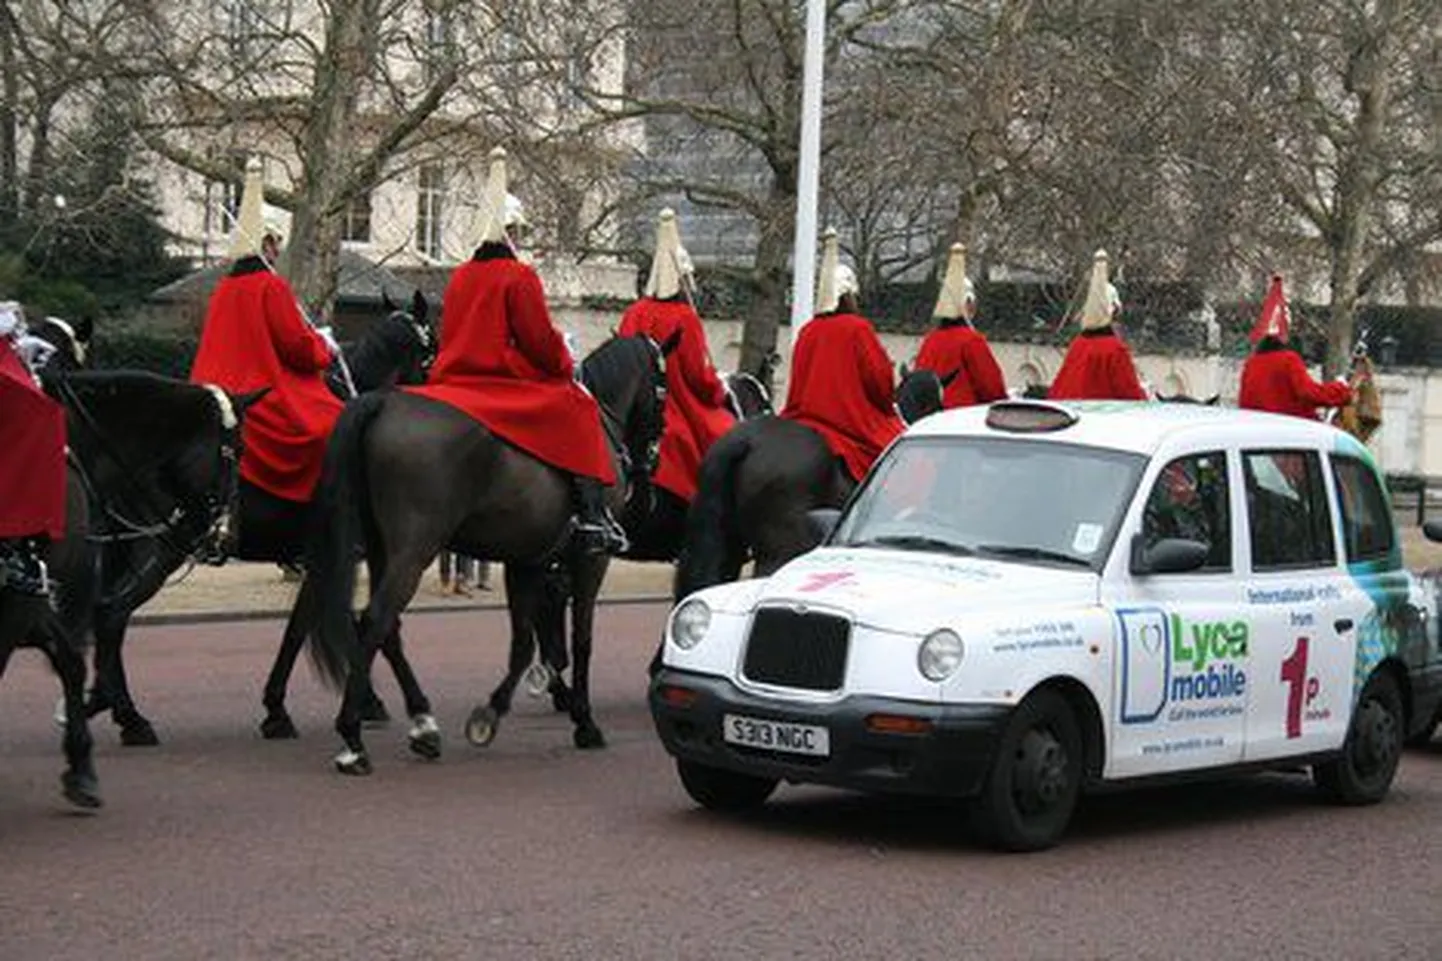 Лондонское такси, ставшее символом города